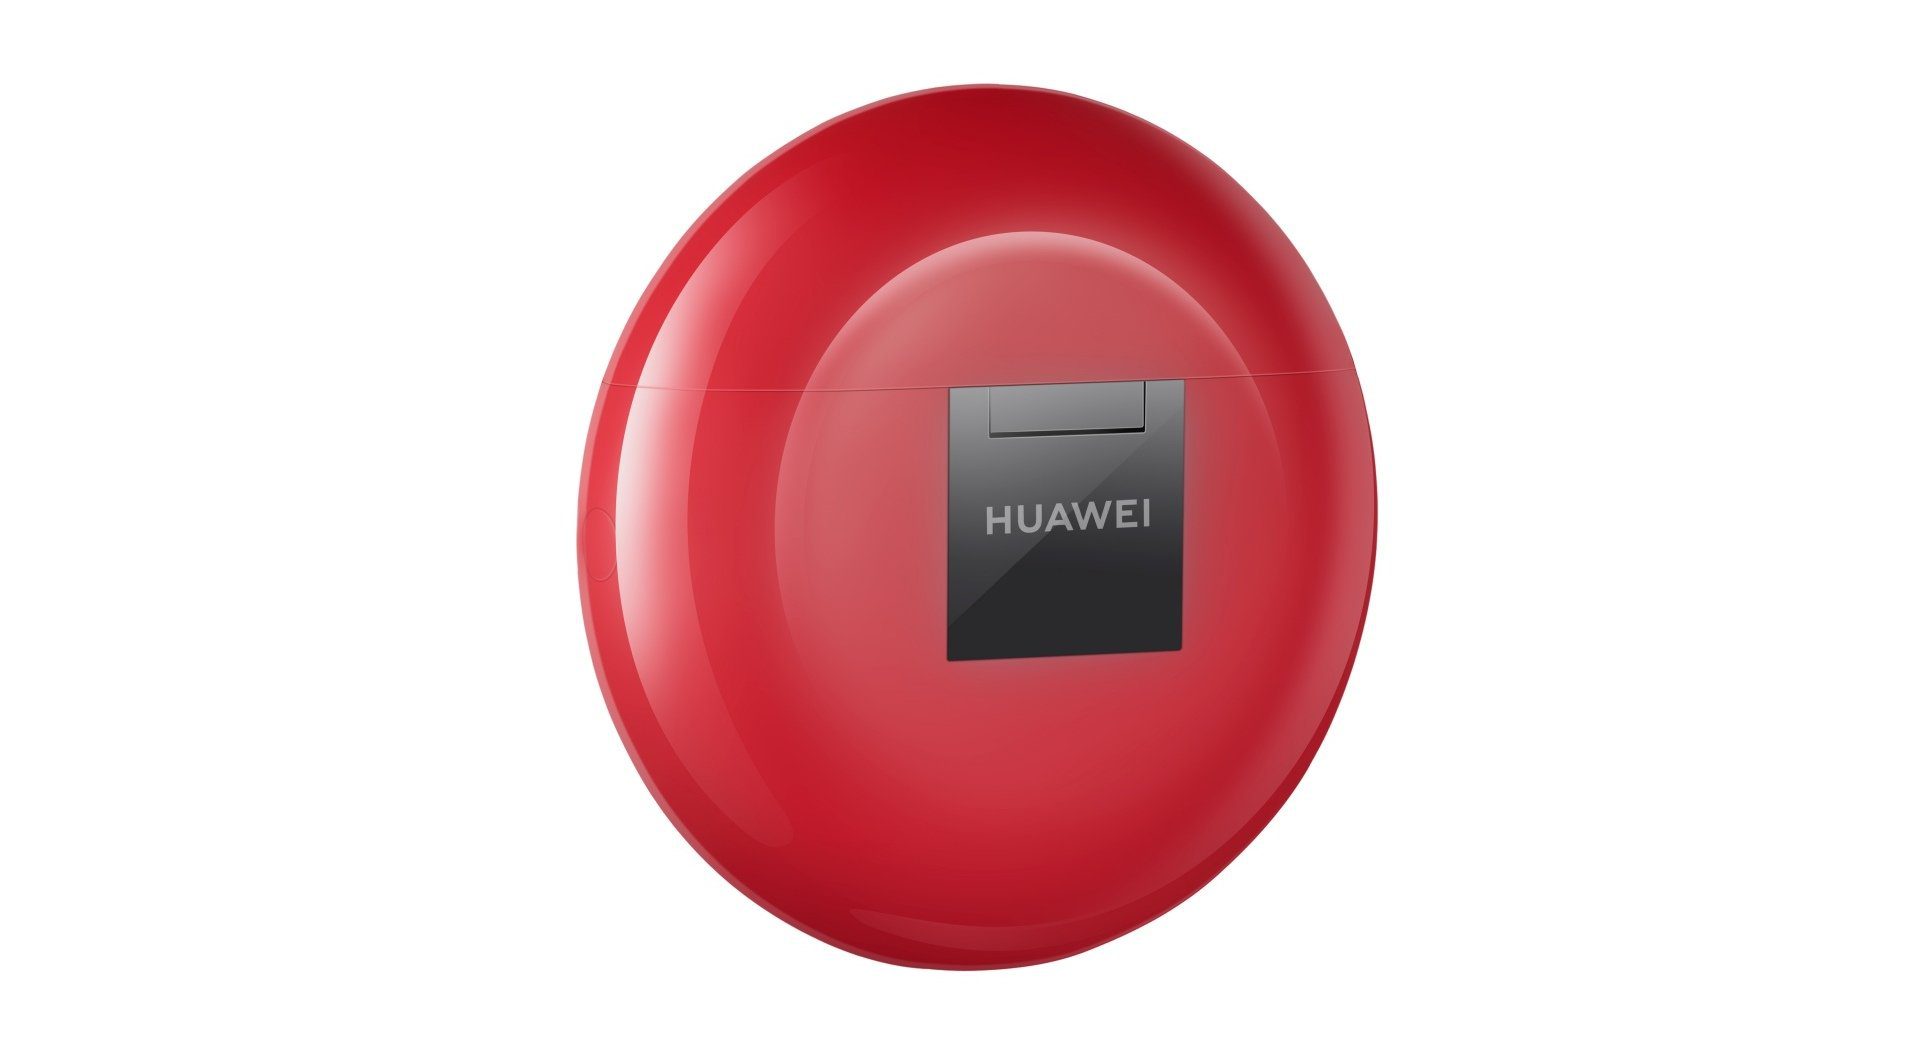 Ý tưởng cho ngày Valentine? Huawei ra mắt Freebud màu đỏ với giá đặc biệt